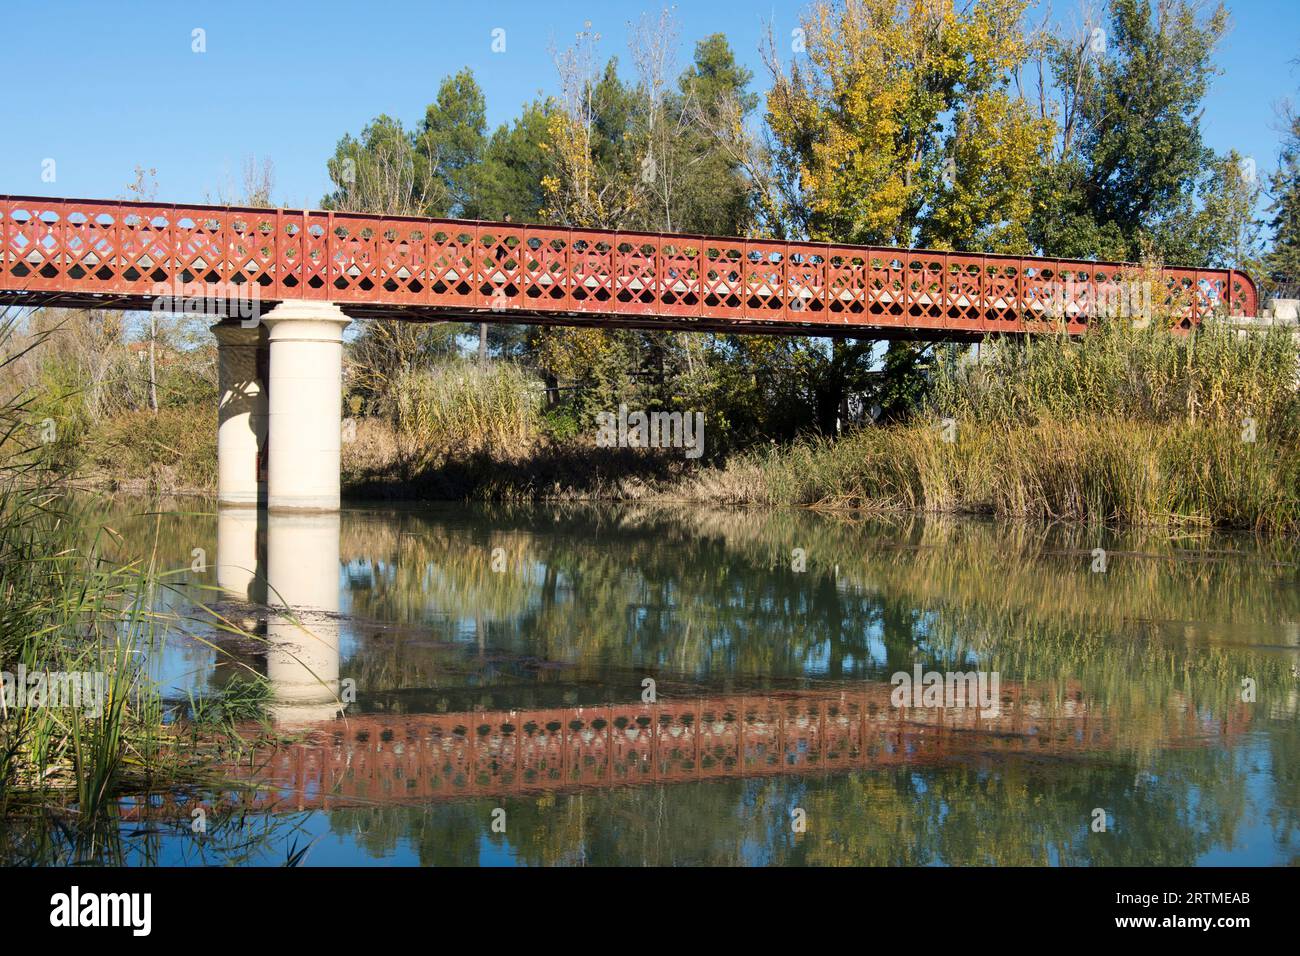 Puente de Fuentidueña de Tajo Stock Photo